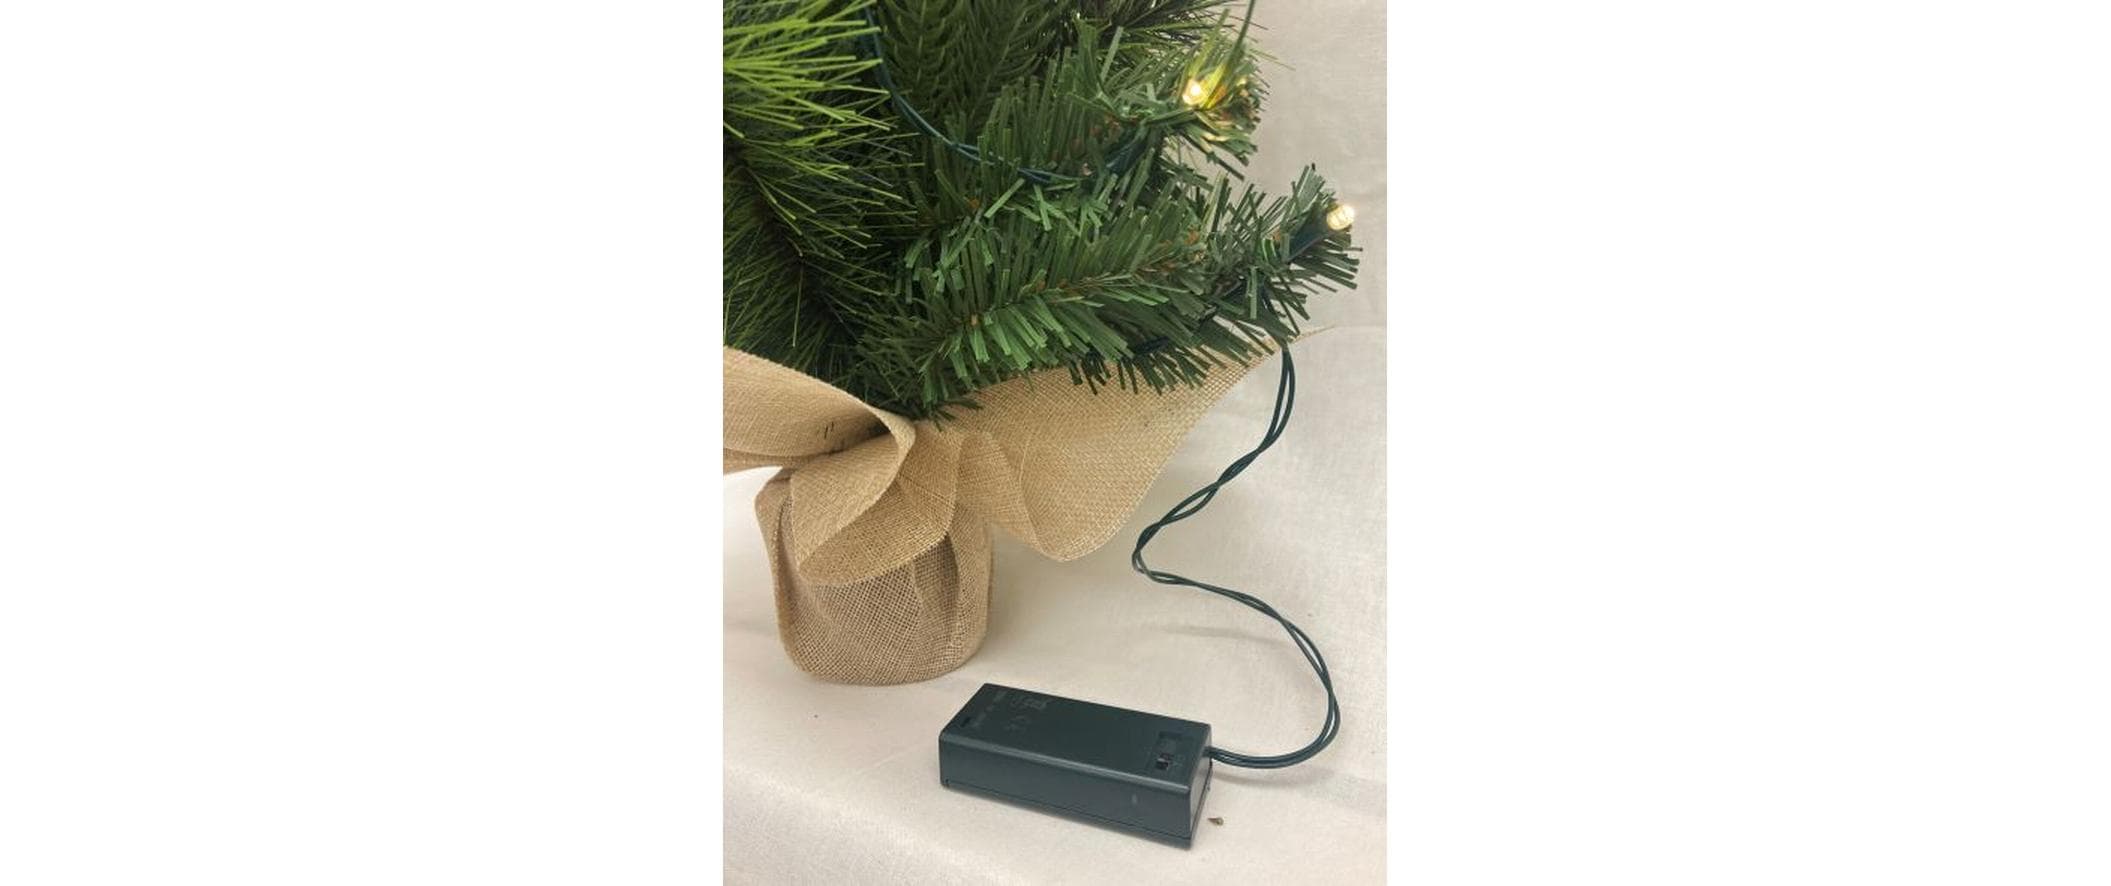 Dameco Weihnachtsbaum mit Jute-Topf, 15 LEDs, 50 cm, Grün